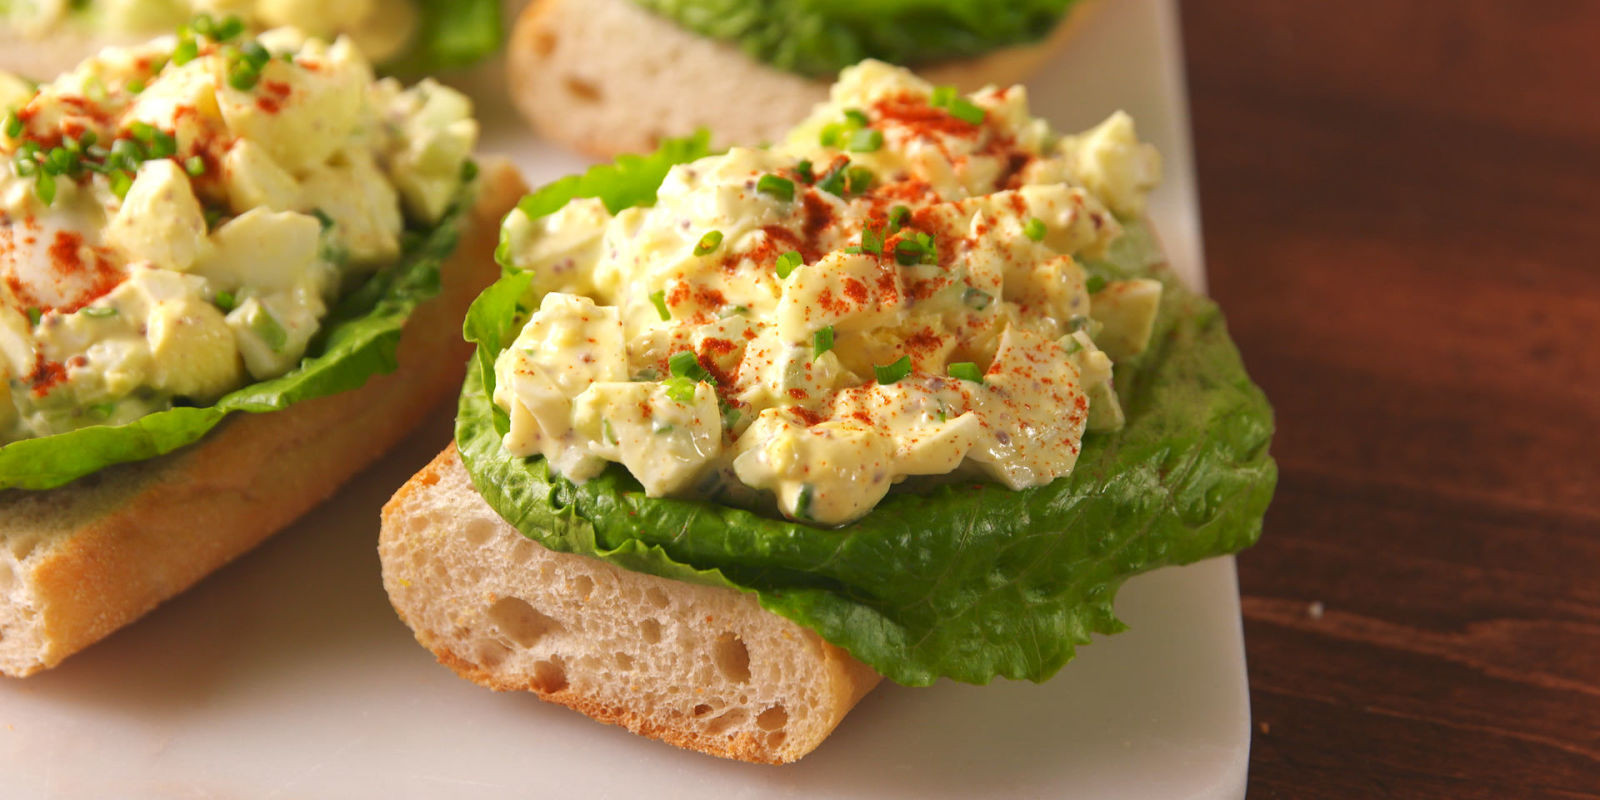 Easter Salads To Make
 15 Best Egg Salad Recipes How To Make Easy Egg Salad